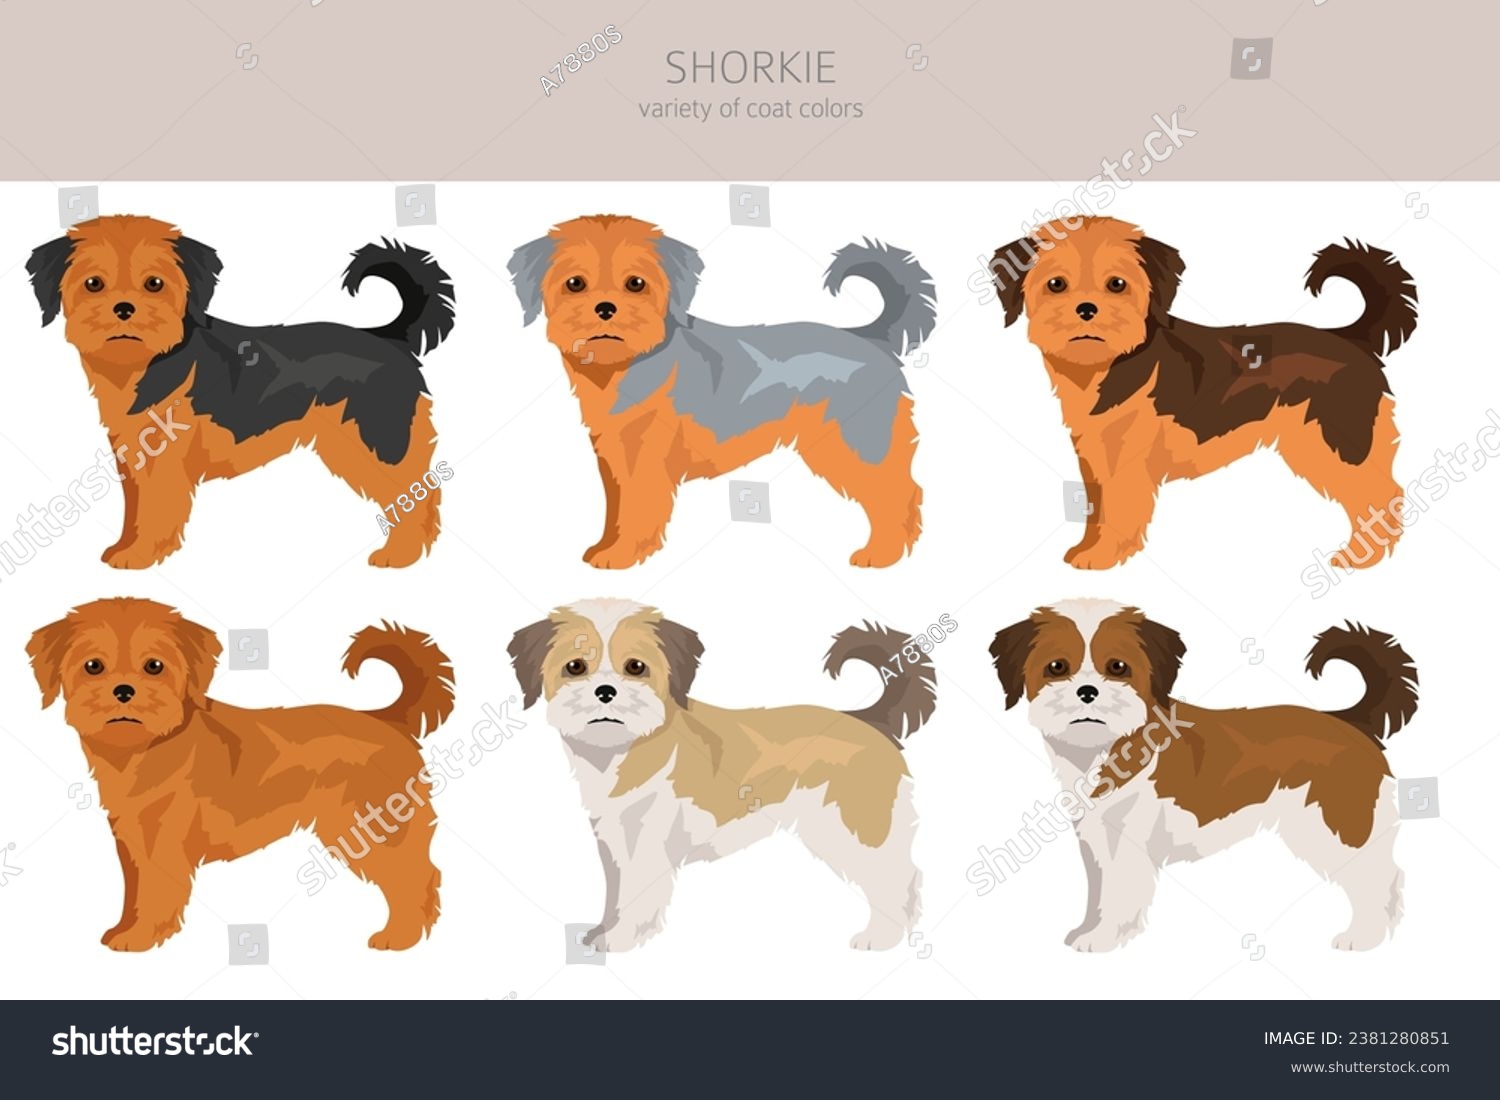 SVG of Shorkie clipart. Shih-Tzu  Yorkshire terrier mix. Different coat colors set.  Vector illustration svg